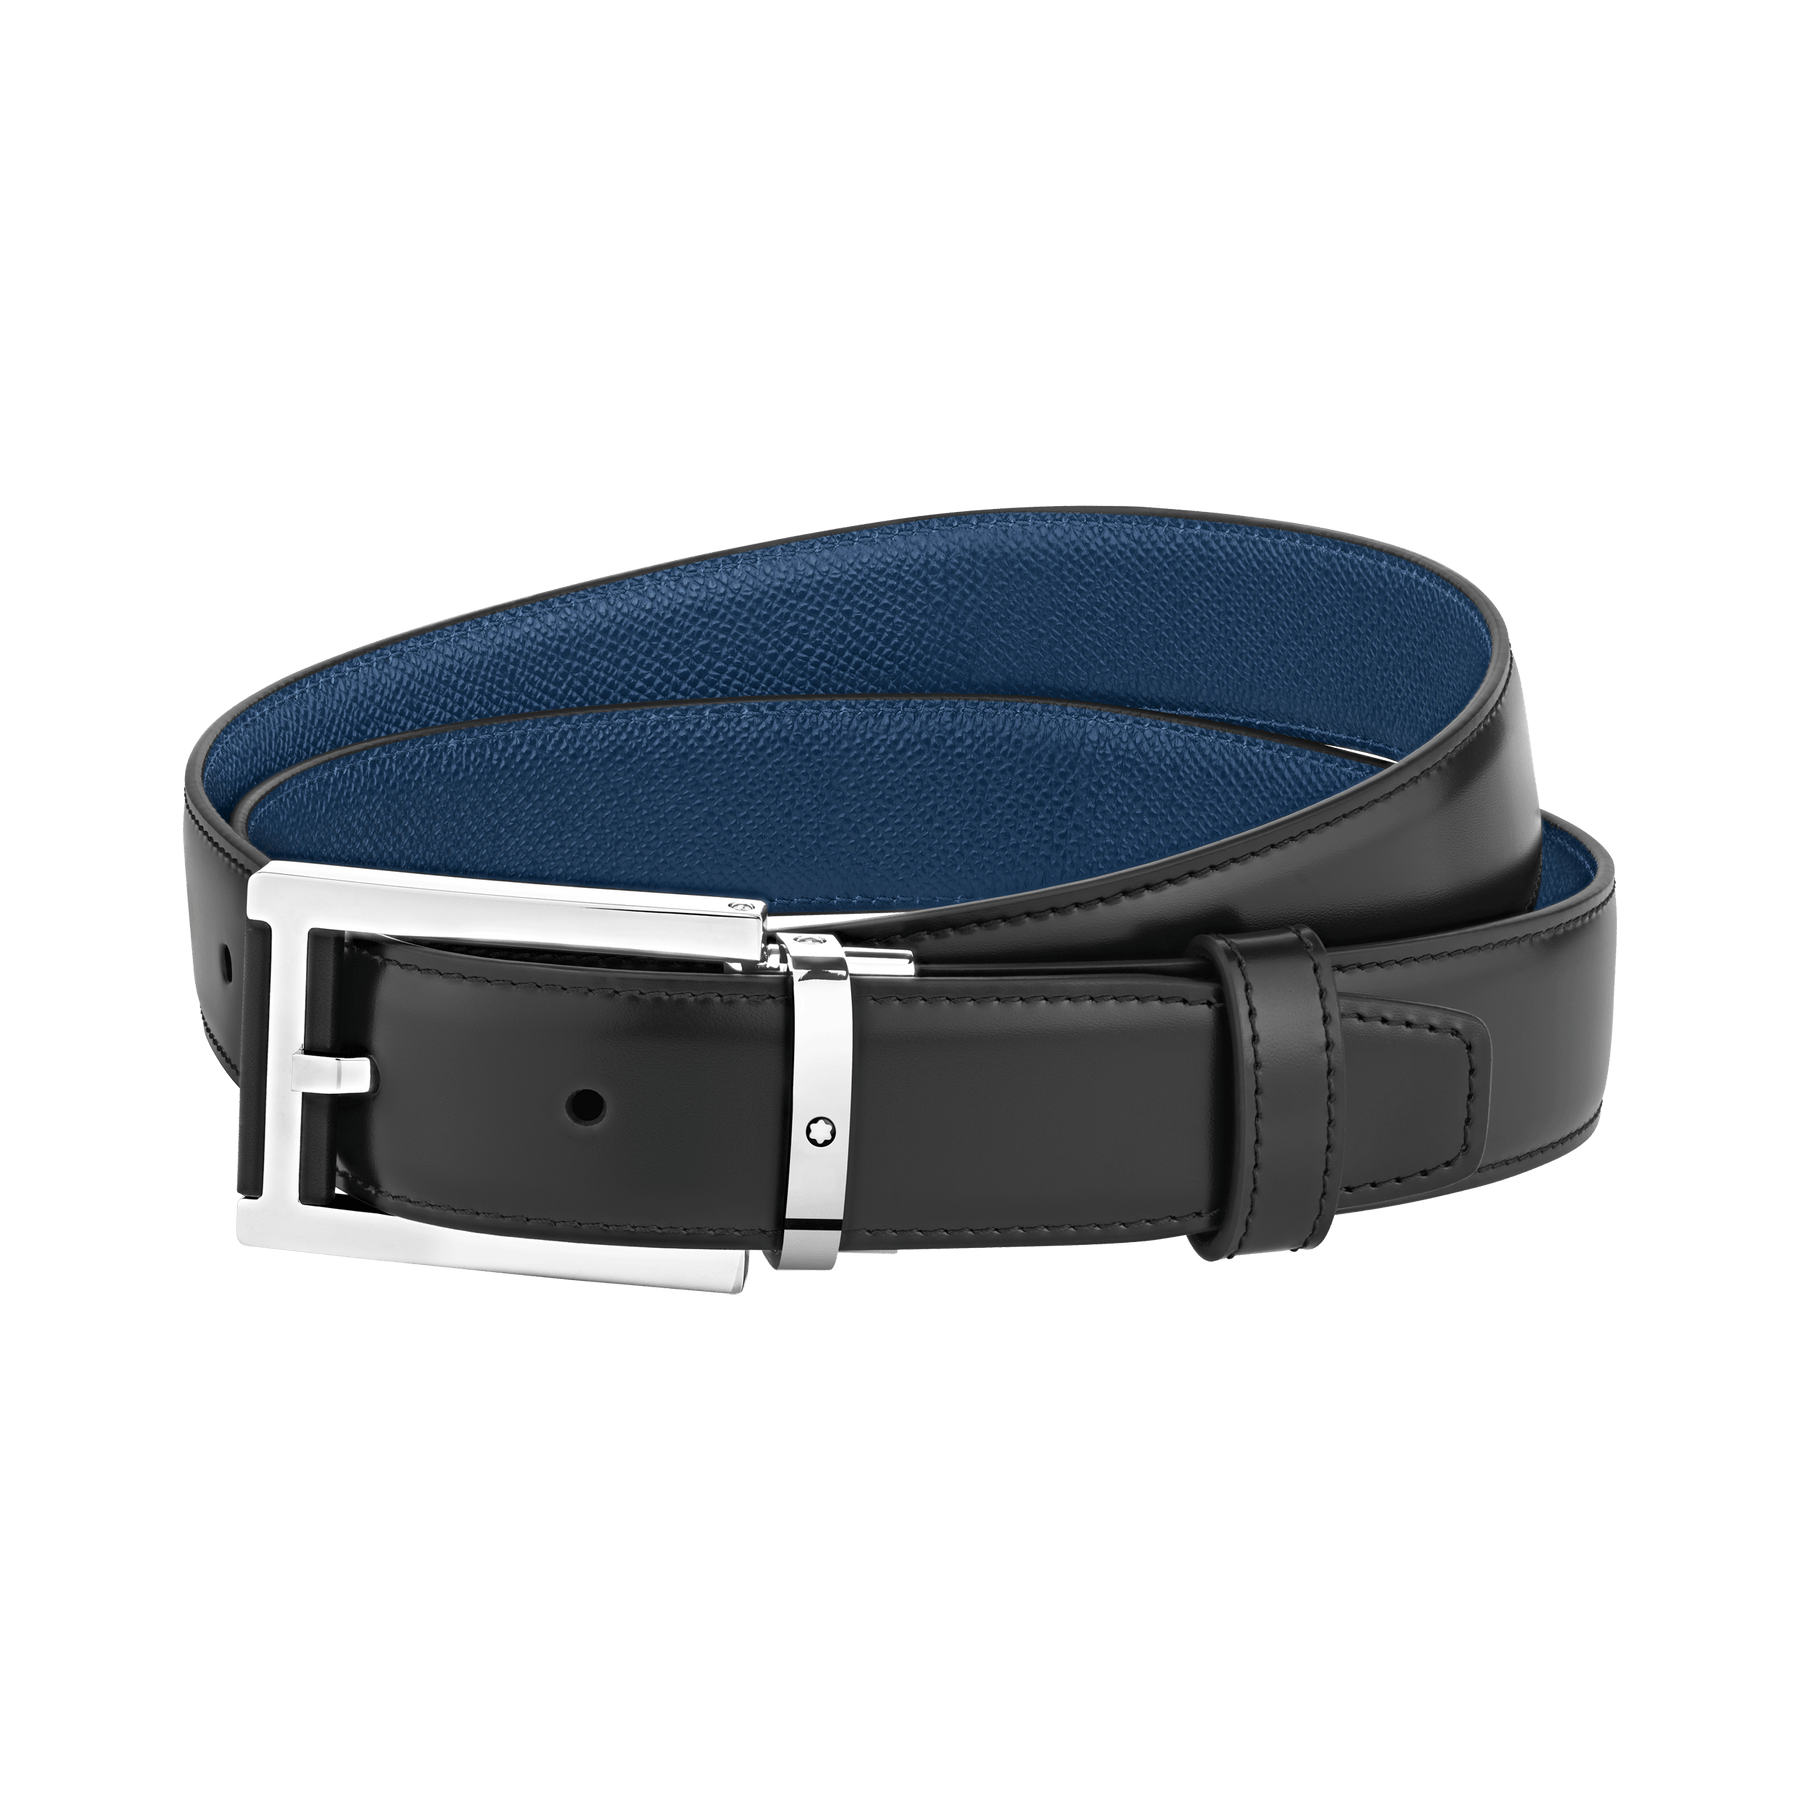 Black/blue 30 mm reversible leather belt